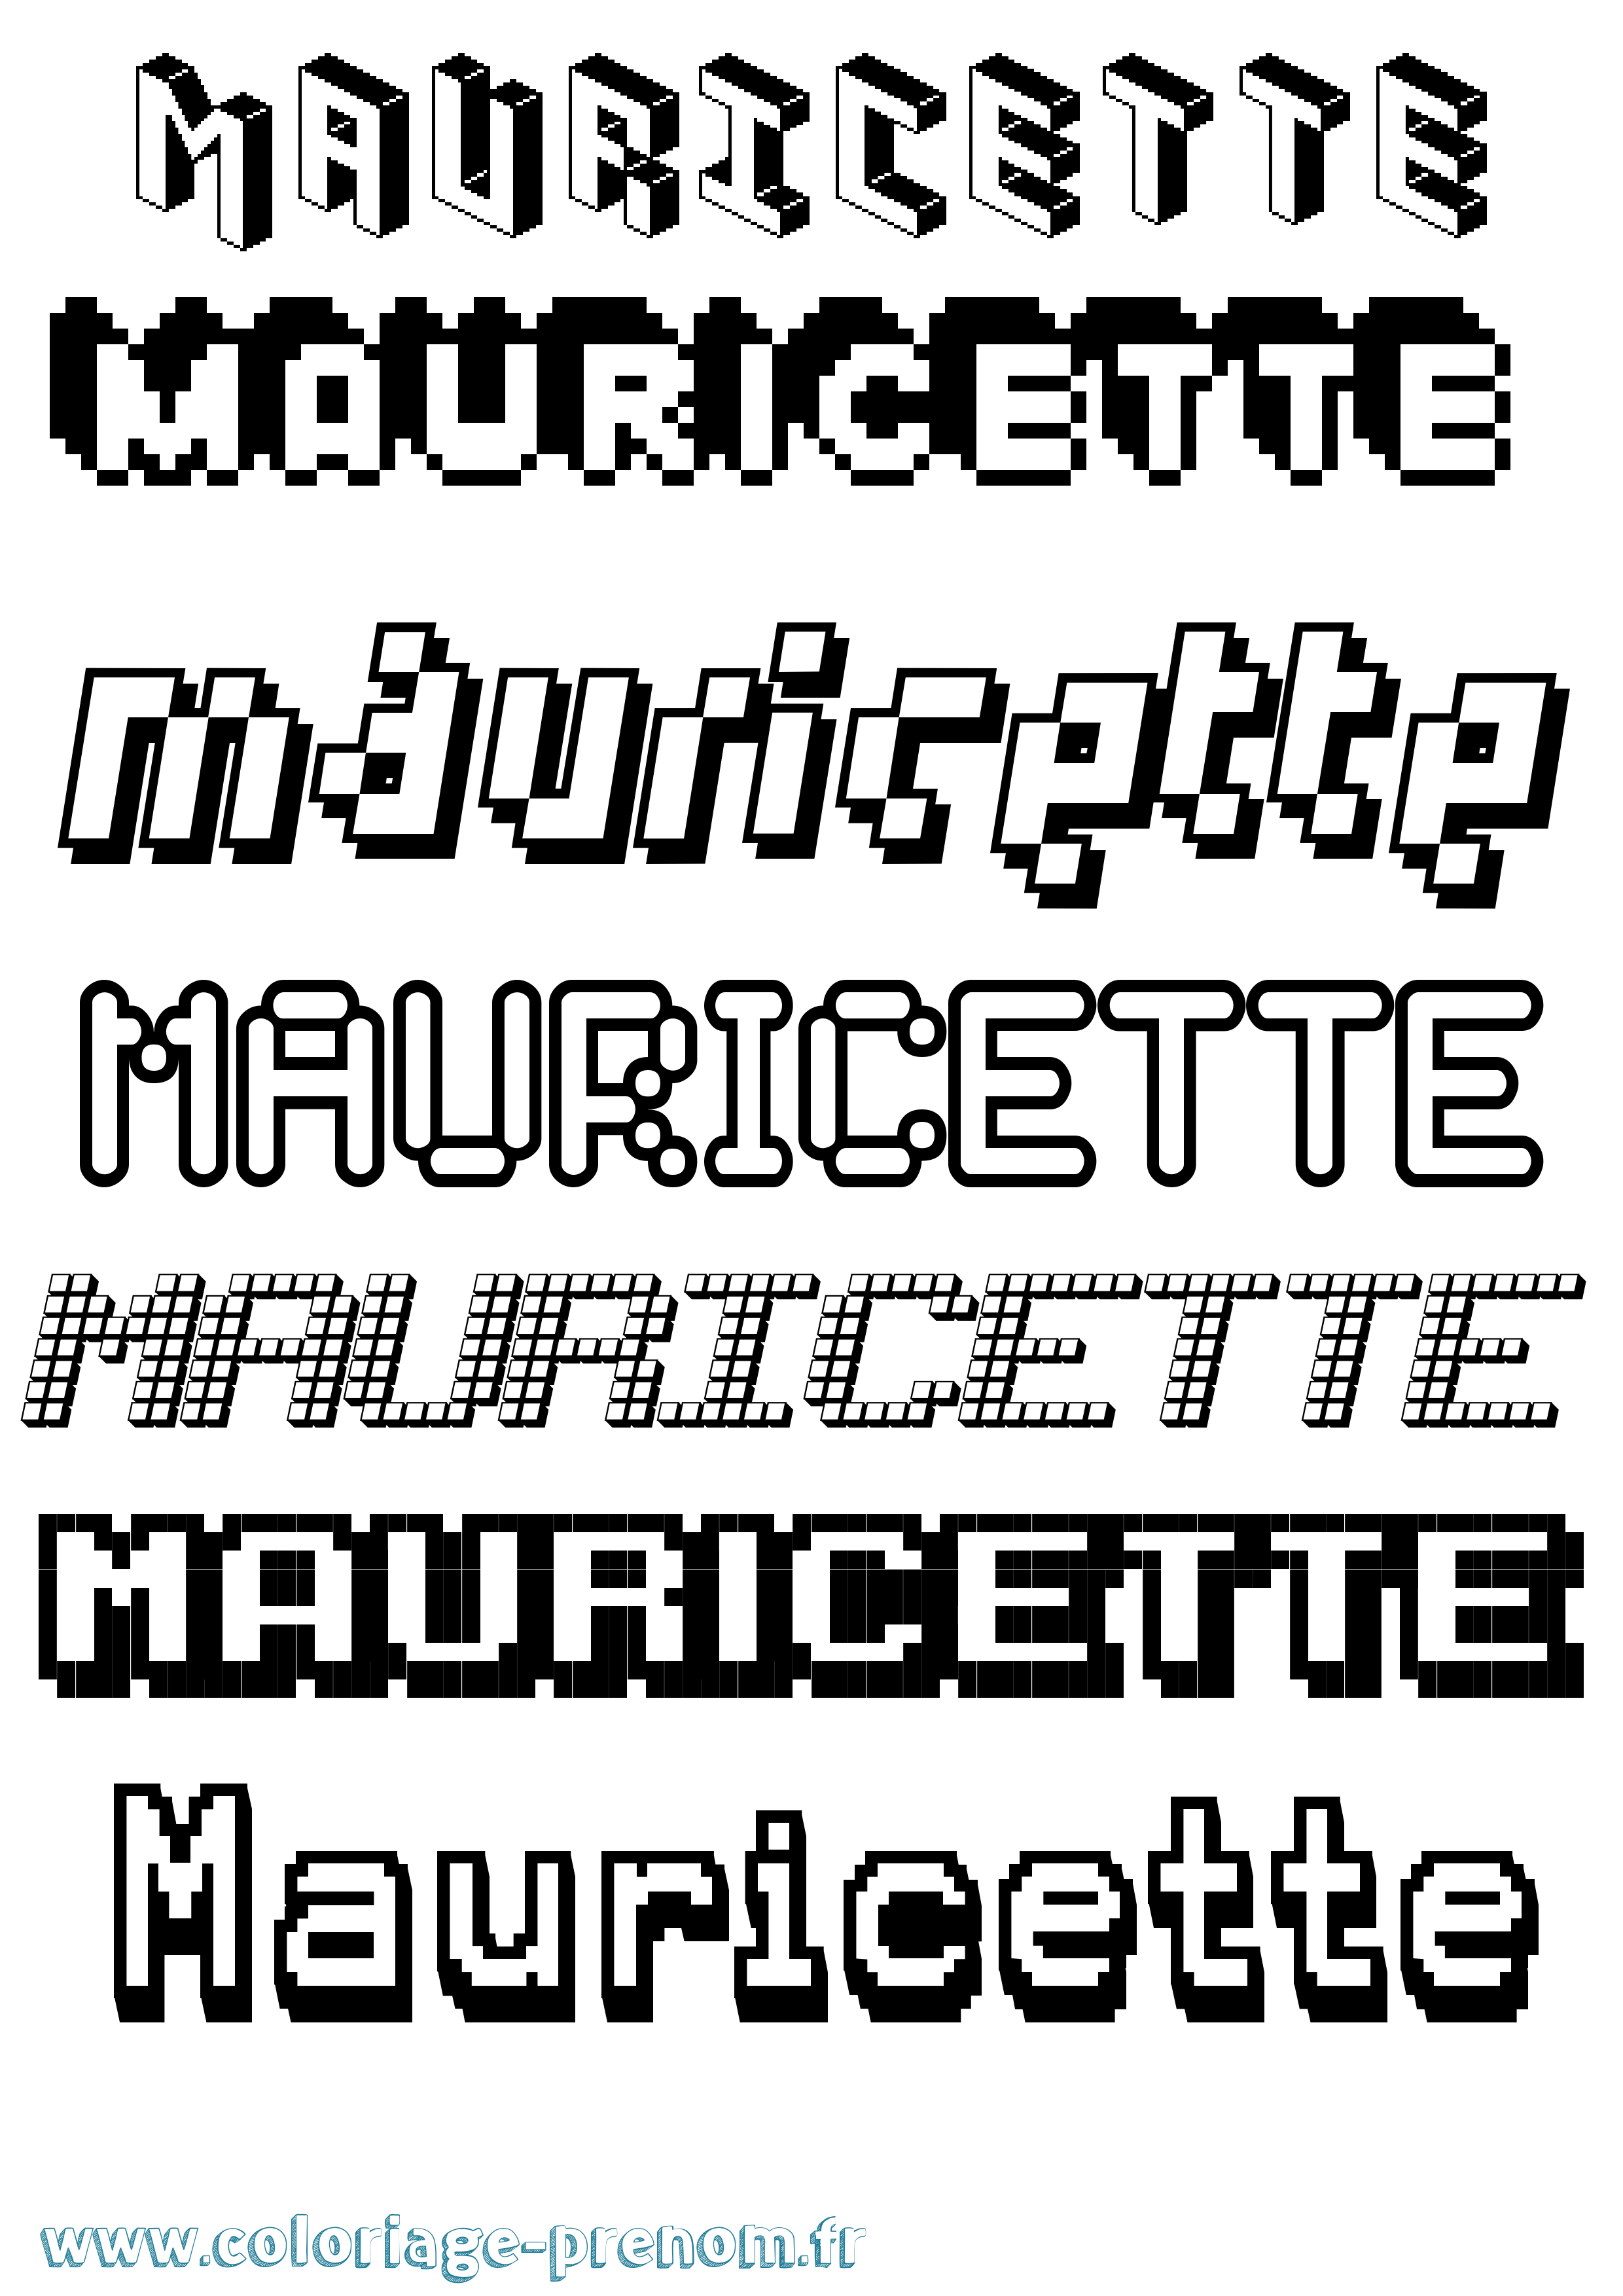 Coloriage prénom Mauricette Pixel